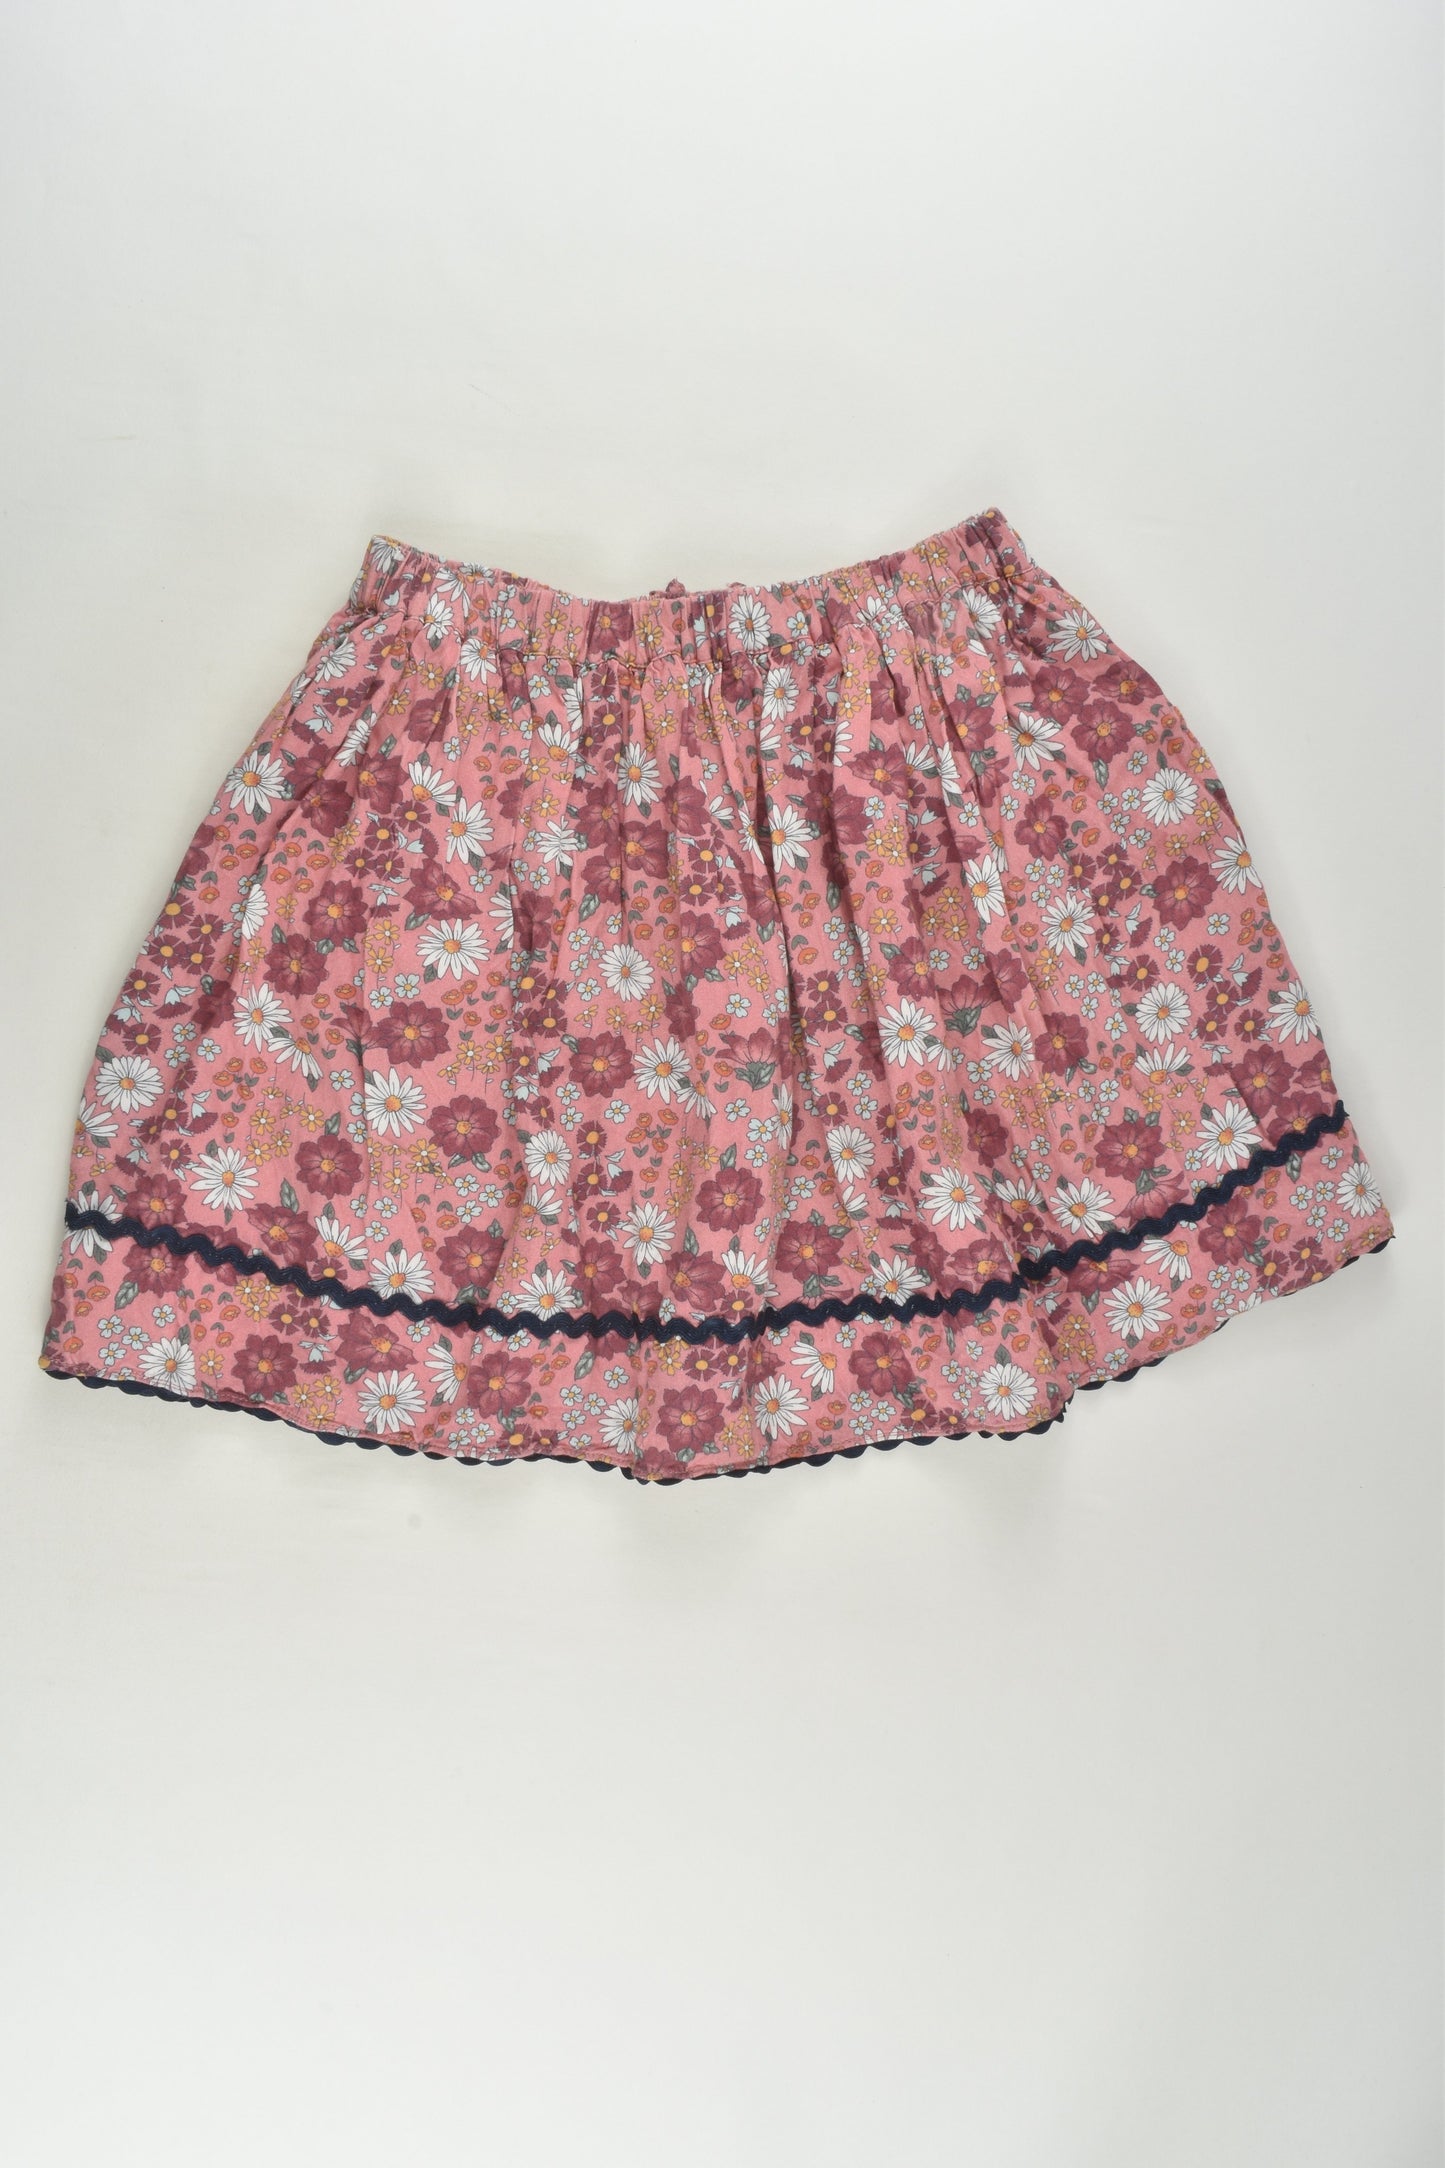 David Jones Size 7 Lined Floral Skirt